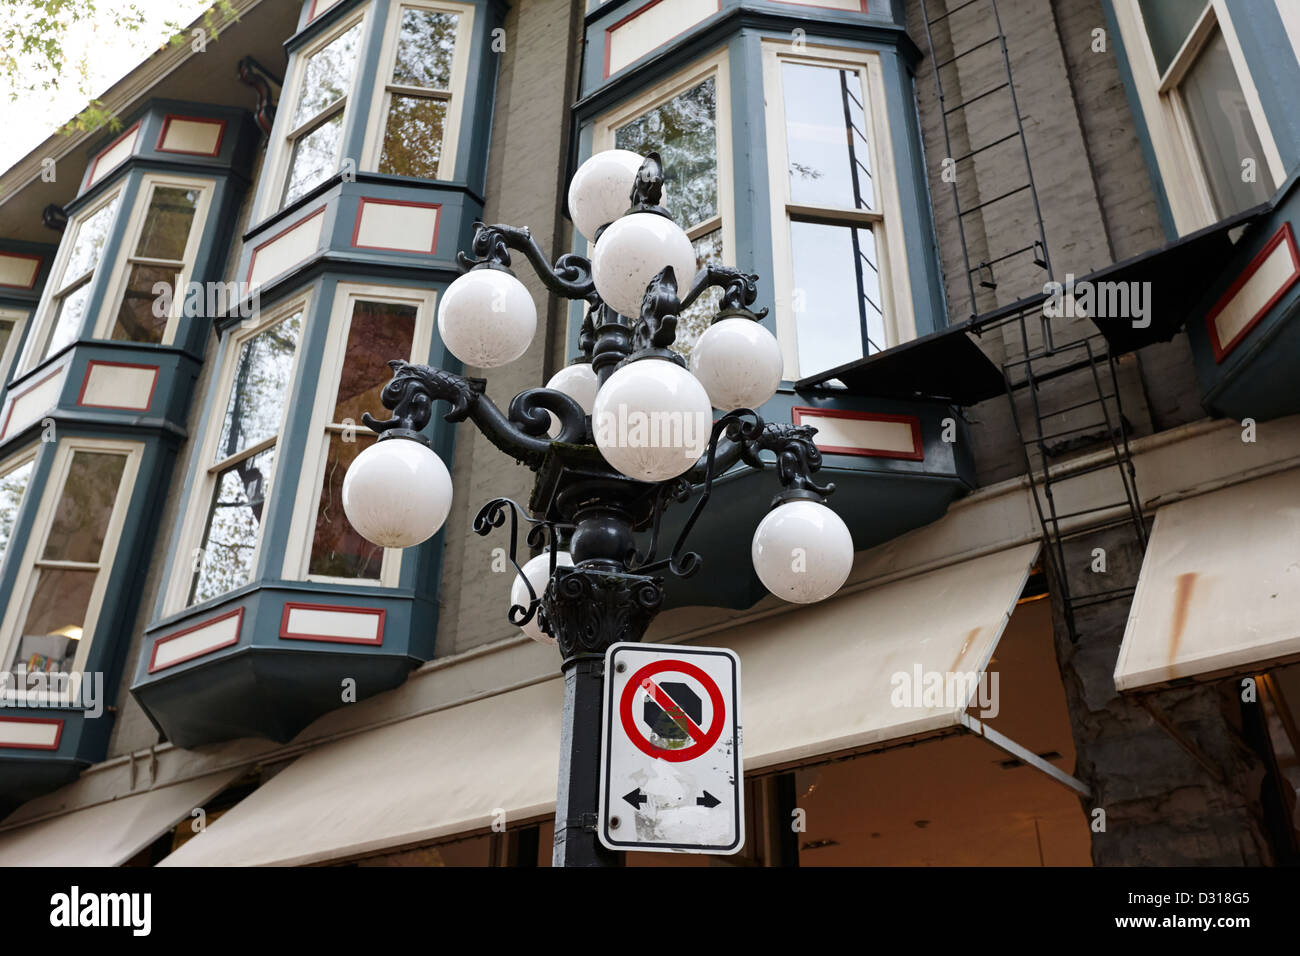 Lampadaires ornés dans quartier historique de Gastown, de Vancouver, BC Canada Banque D'Images